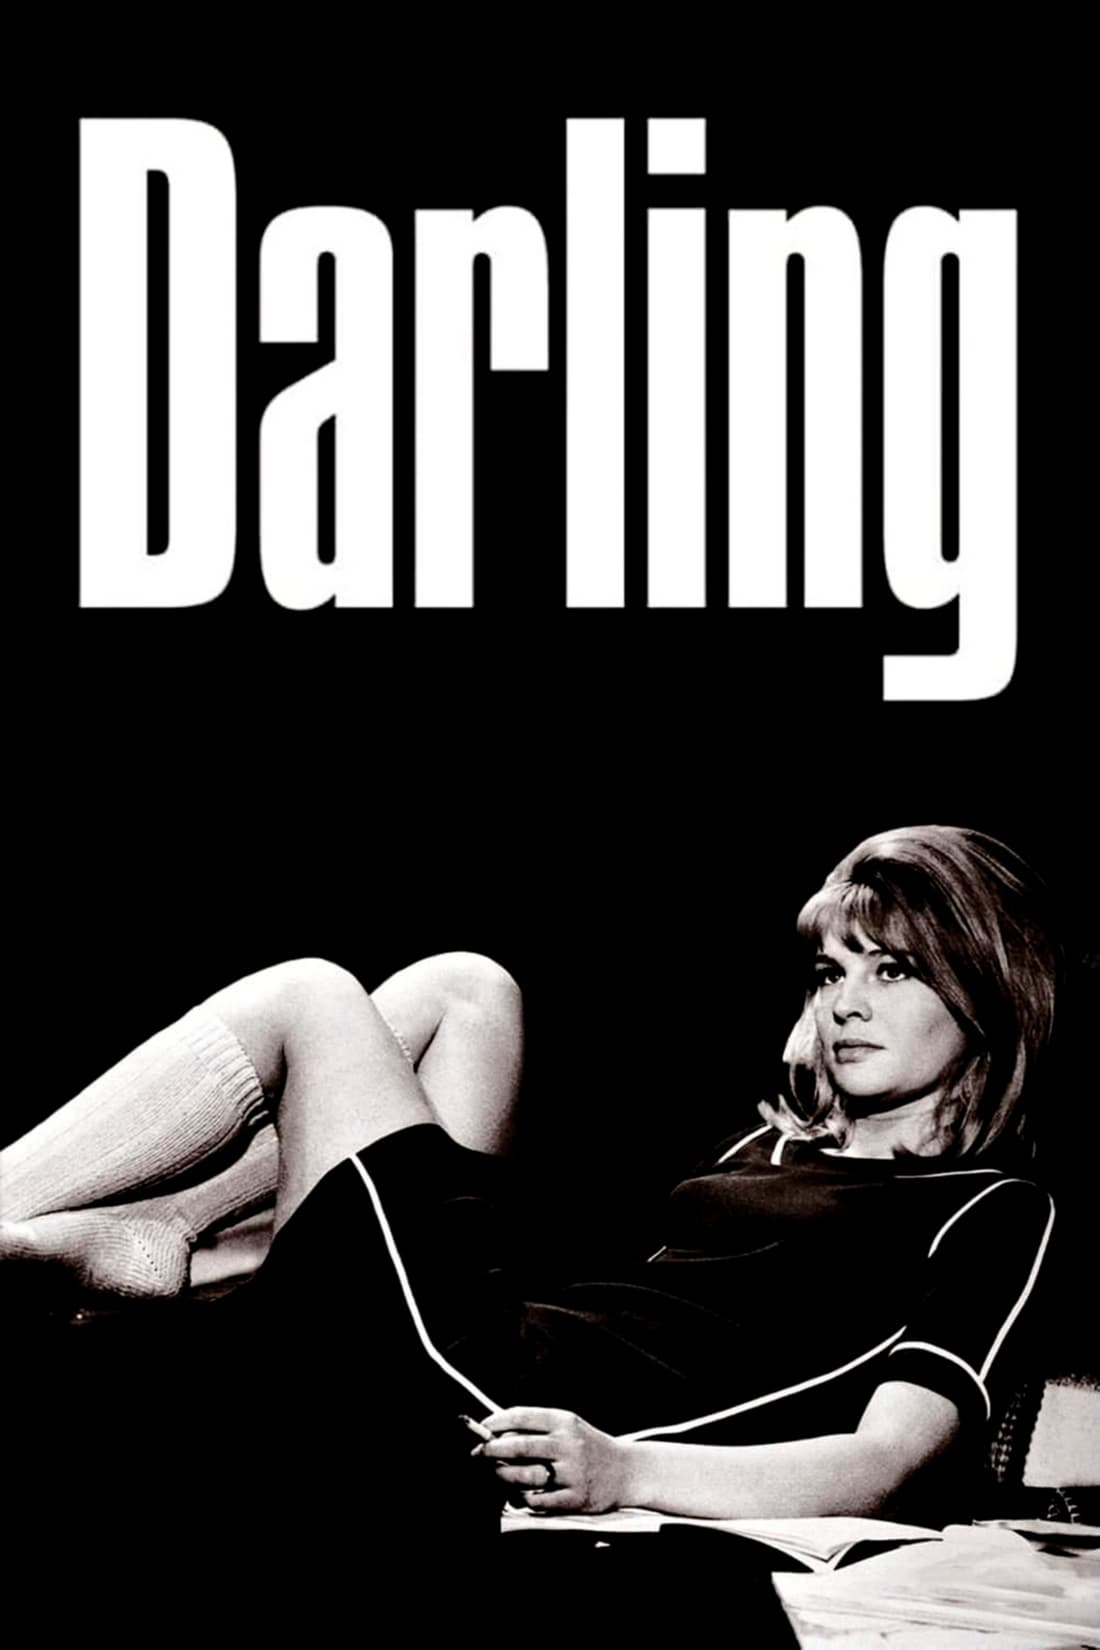 Darling chérie